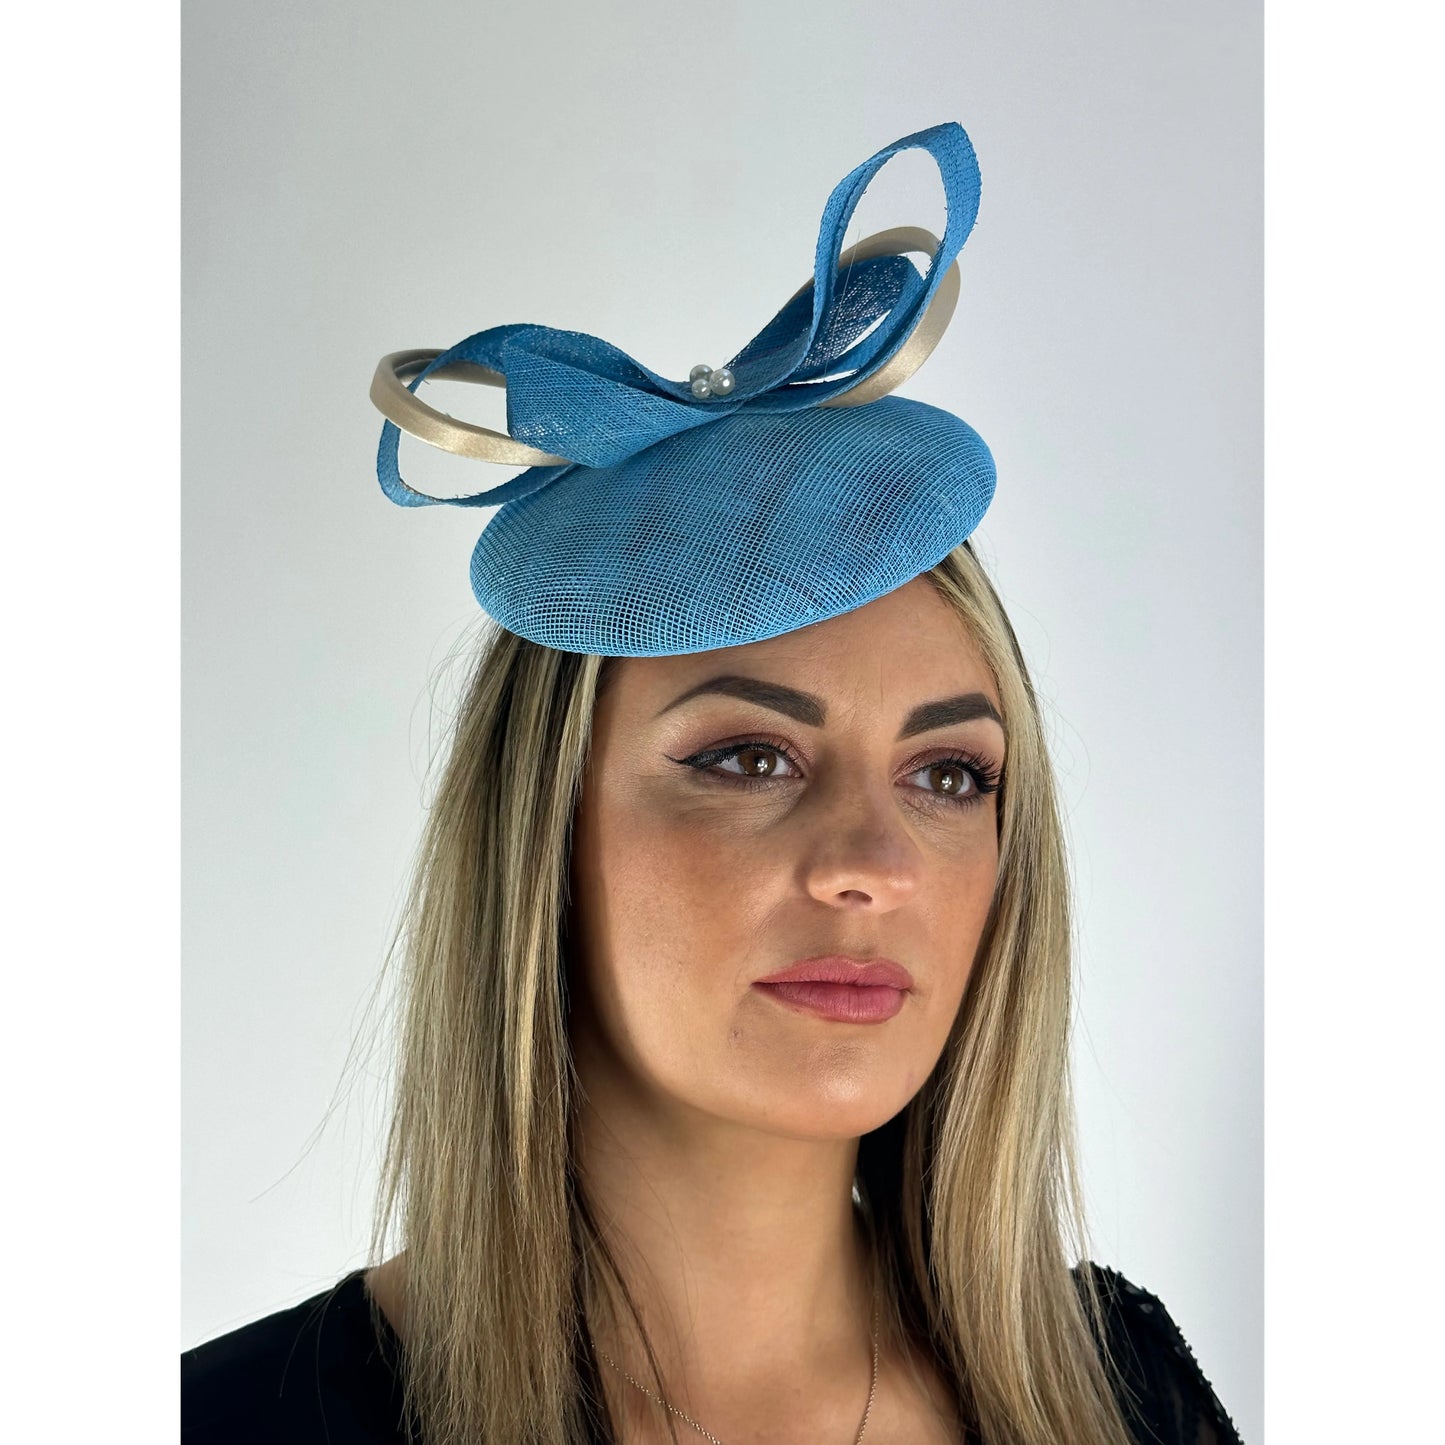 Sky blue bow headpiece